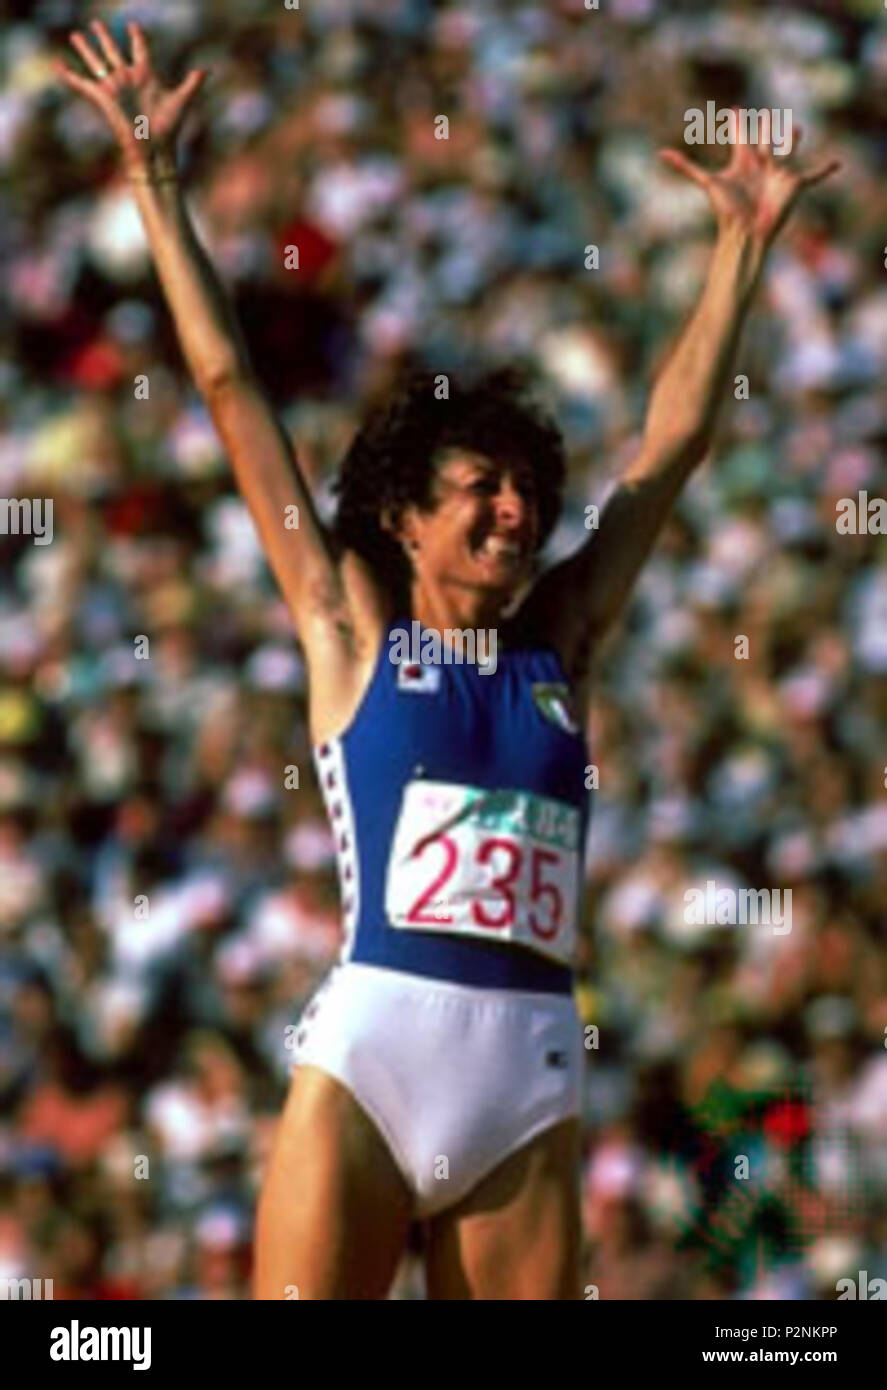 English Sara Simeoni In A Race In Italy In 1970s 1970s Unknown 80 Sara Simeoni 1970s Stock Photo Alamy